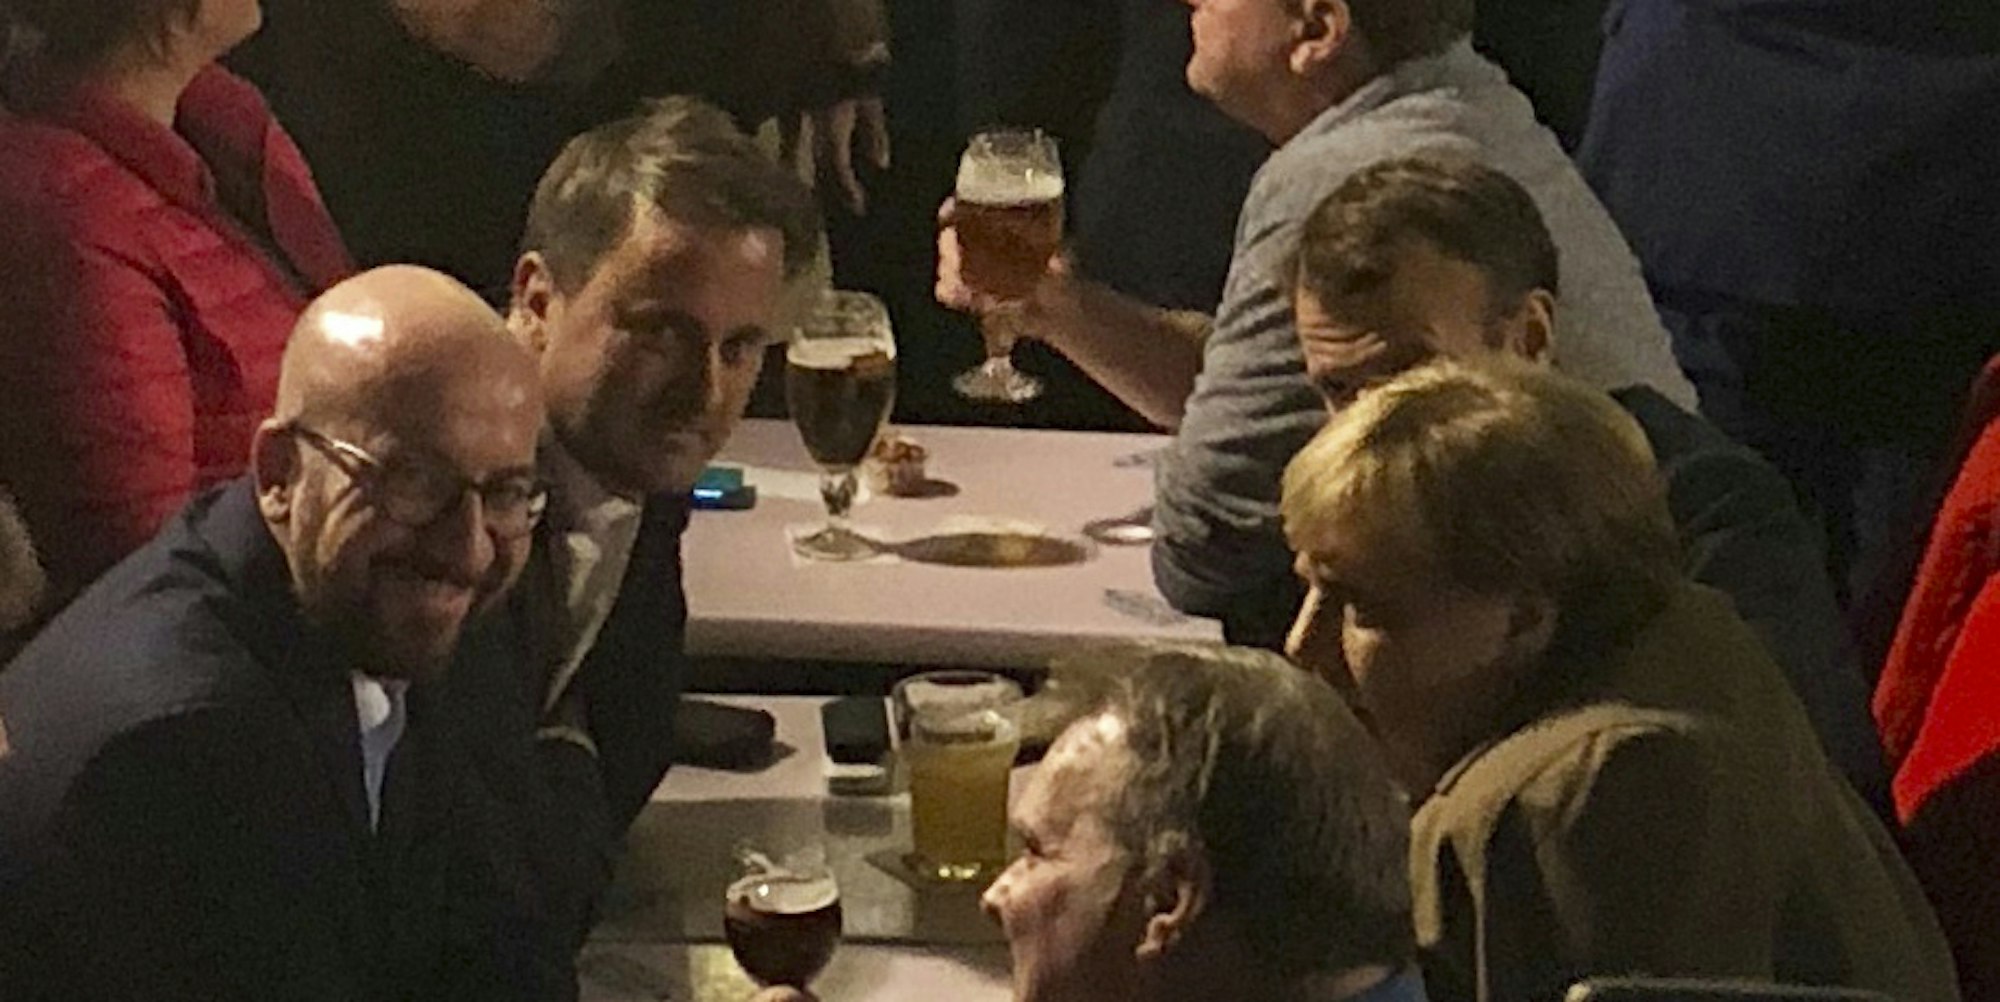 Merkel und Macron bei Bier und Fritten